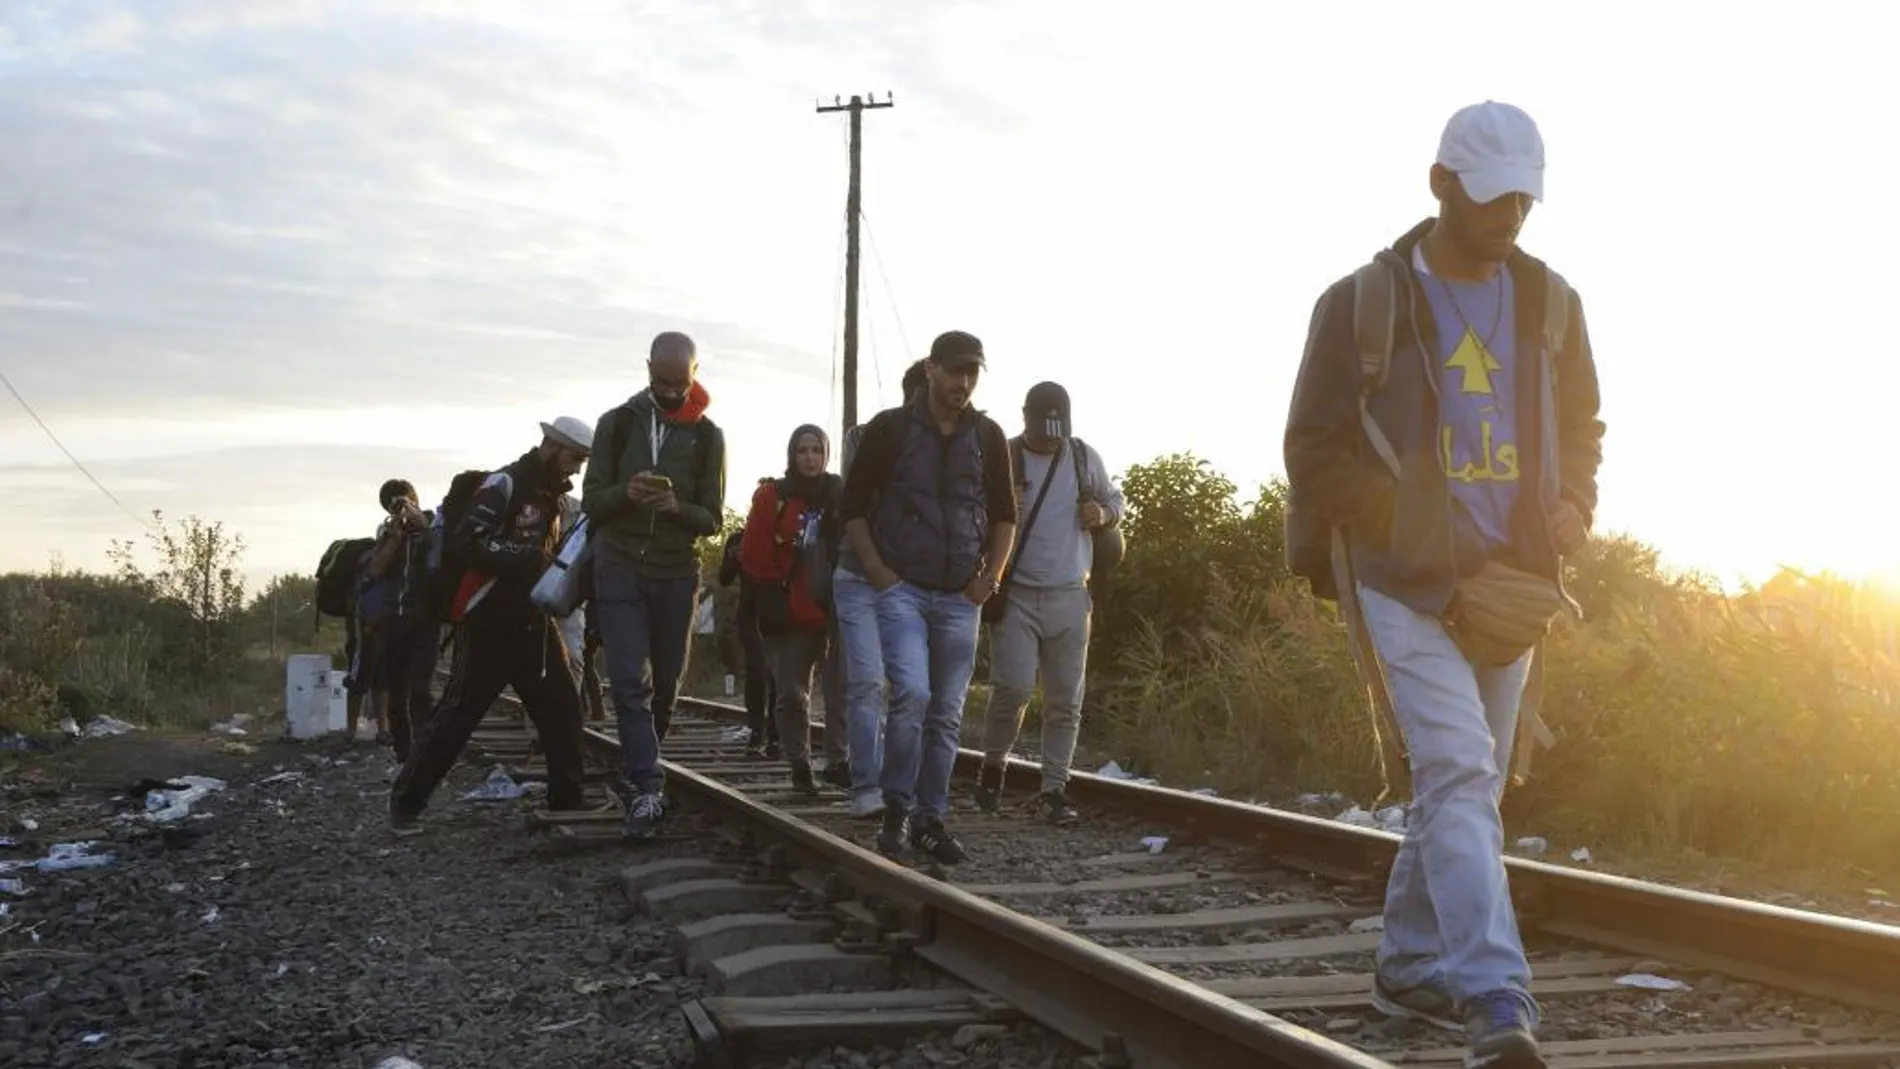 Inmigrantes caminan junto a una línea de tren que conecta a Horgos y Szeged en las proximidades de la frontera entre Hungría y Serbia, cerca a la frontera Roszke, a unos 180 km de Budapest